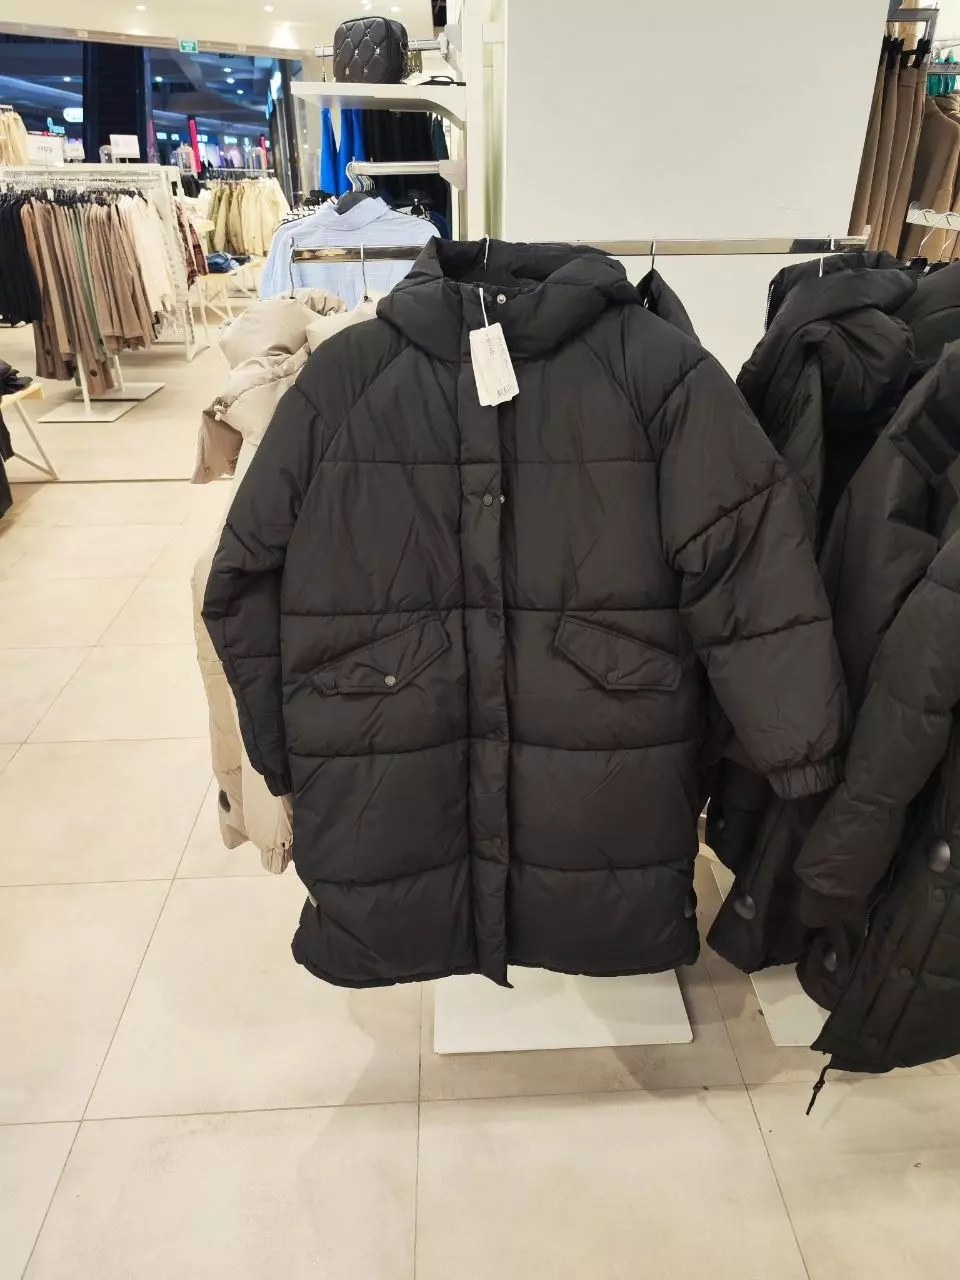 Ассортимент курток в магазине O’STIN